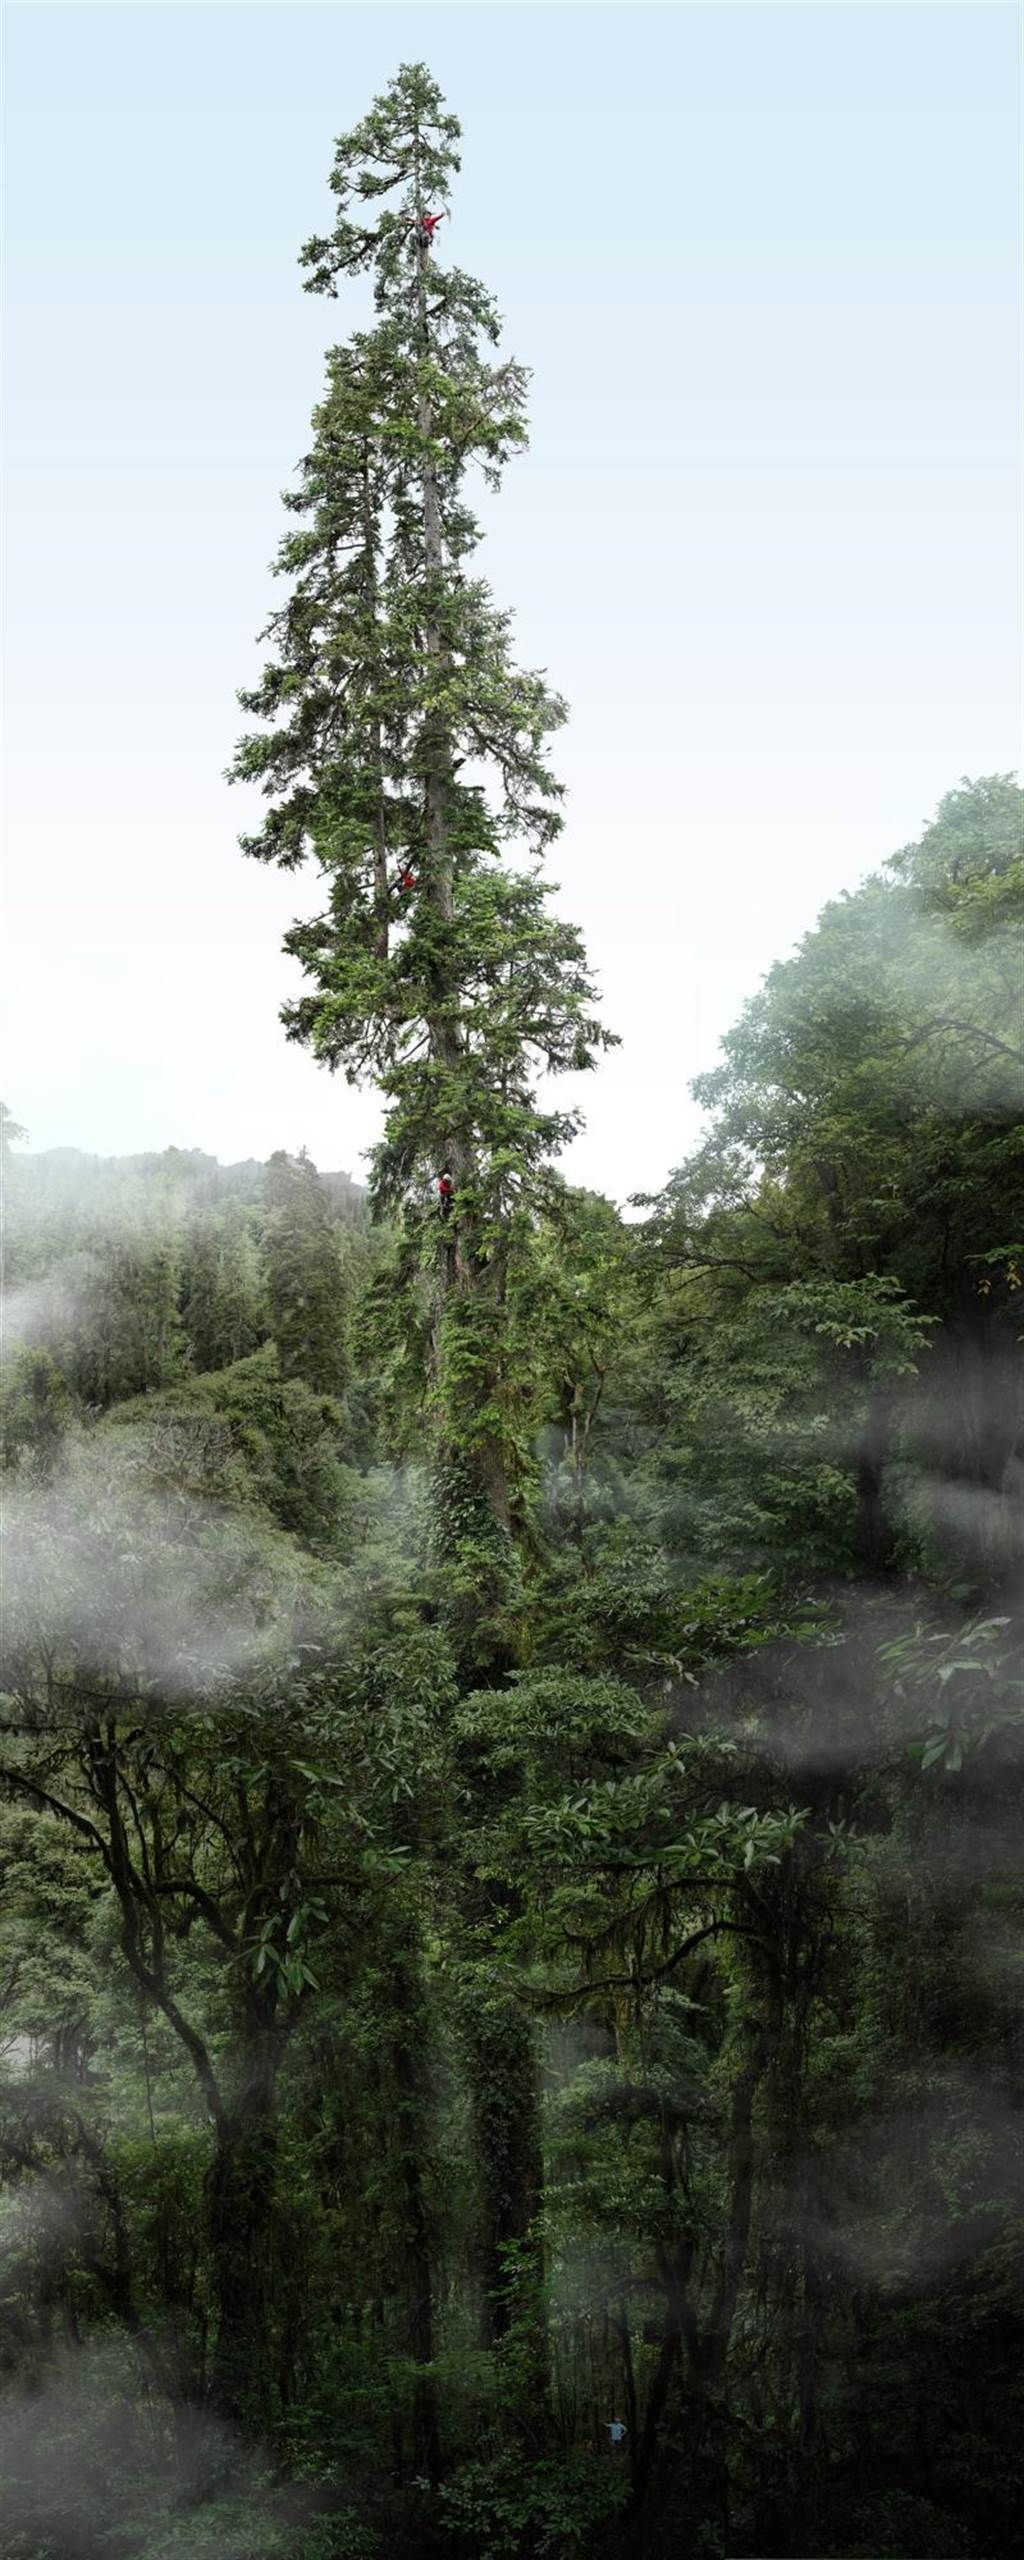 「中国第一高树」云南黄果冷杉的准确高度为83.4米。